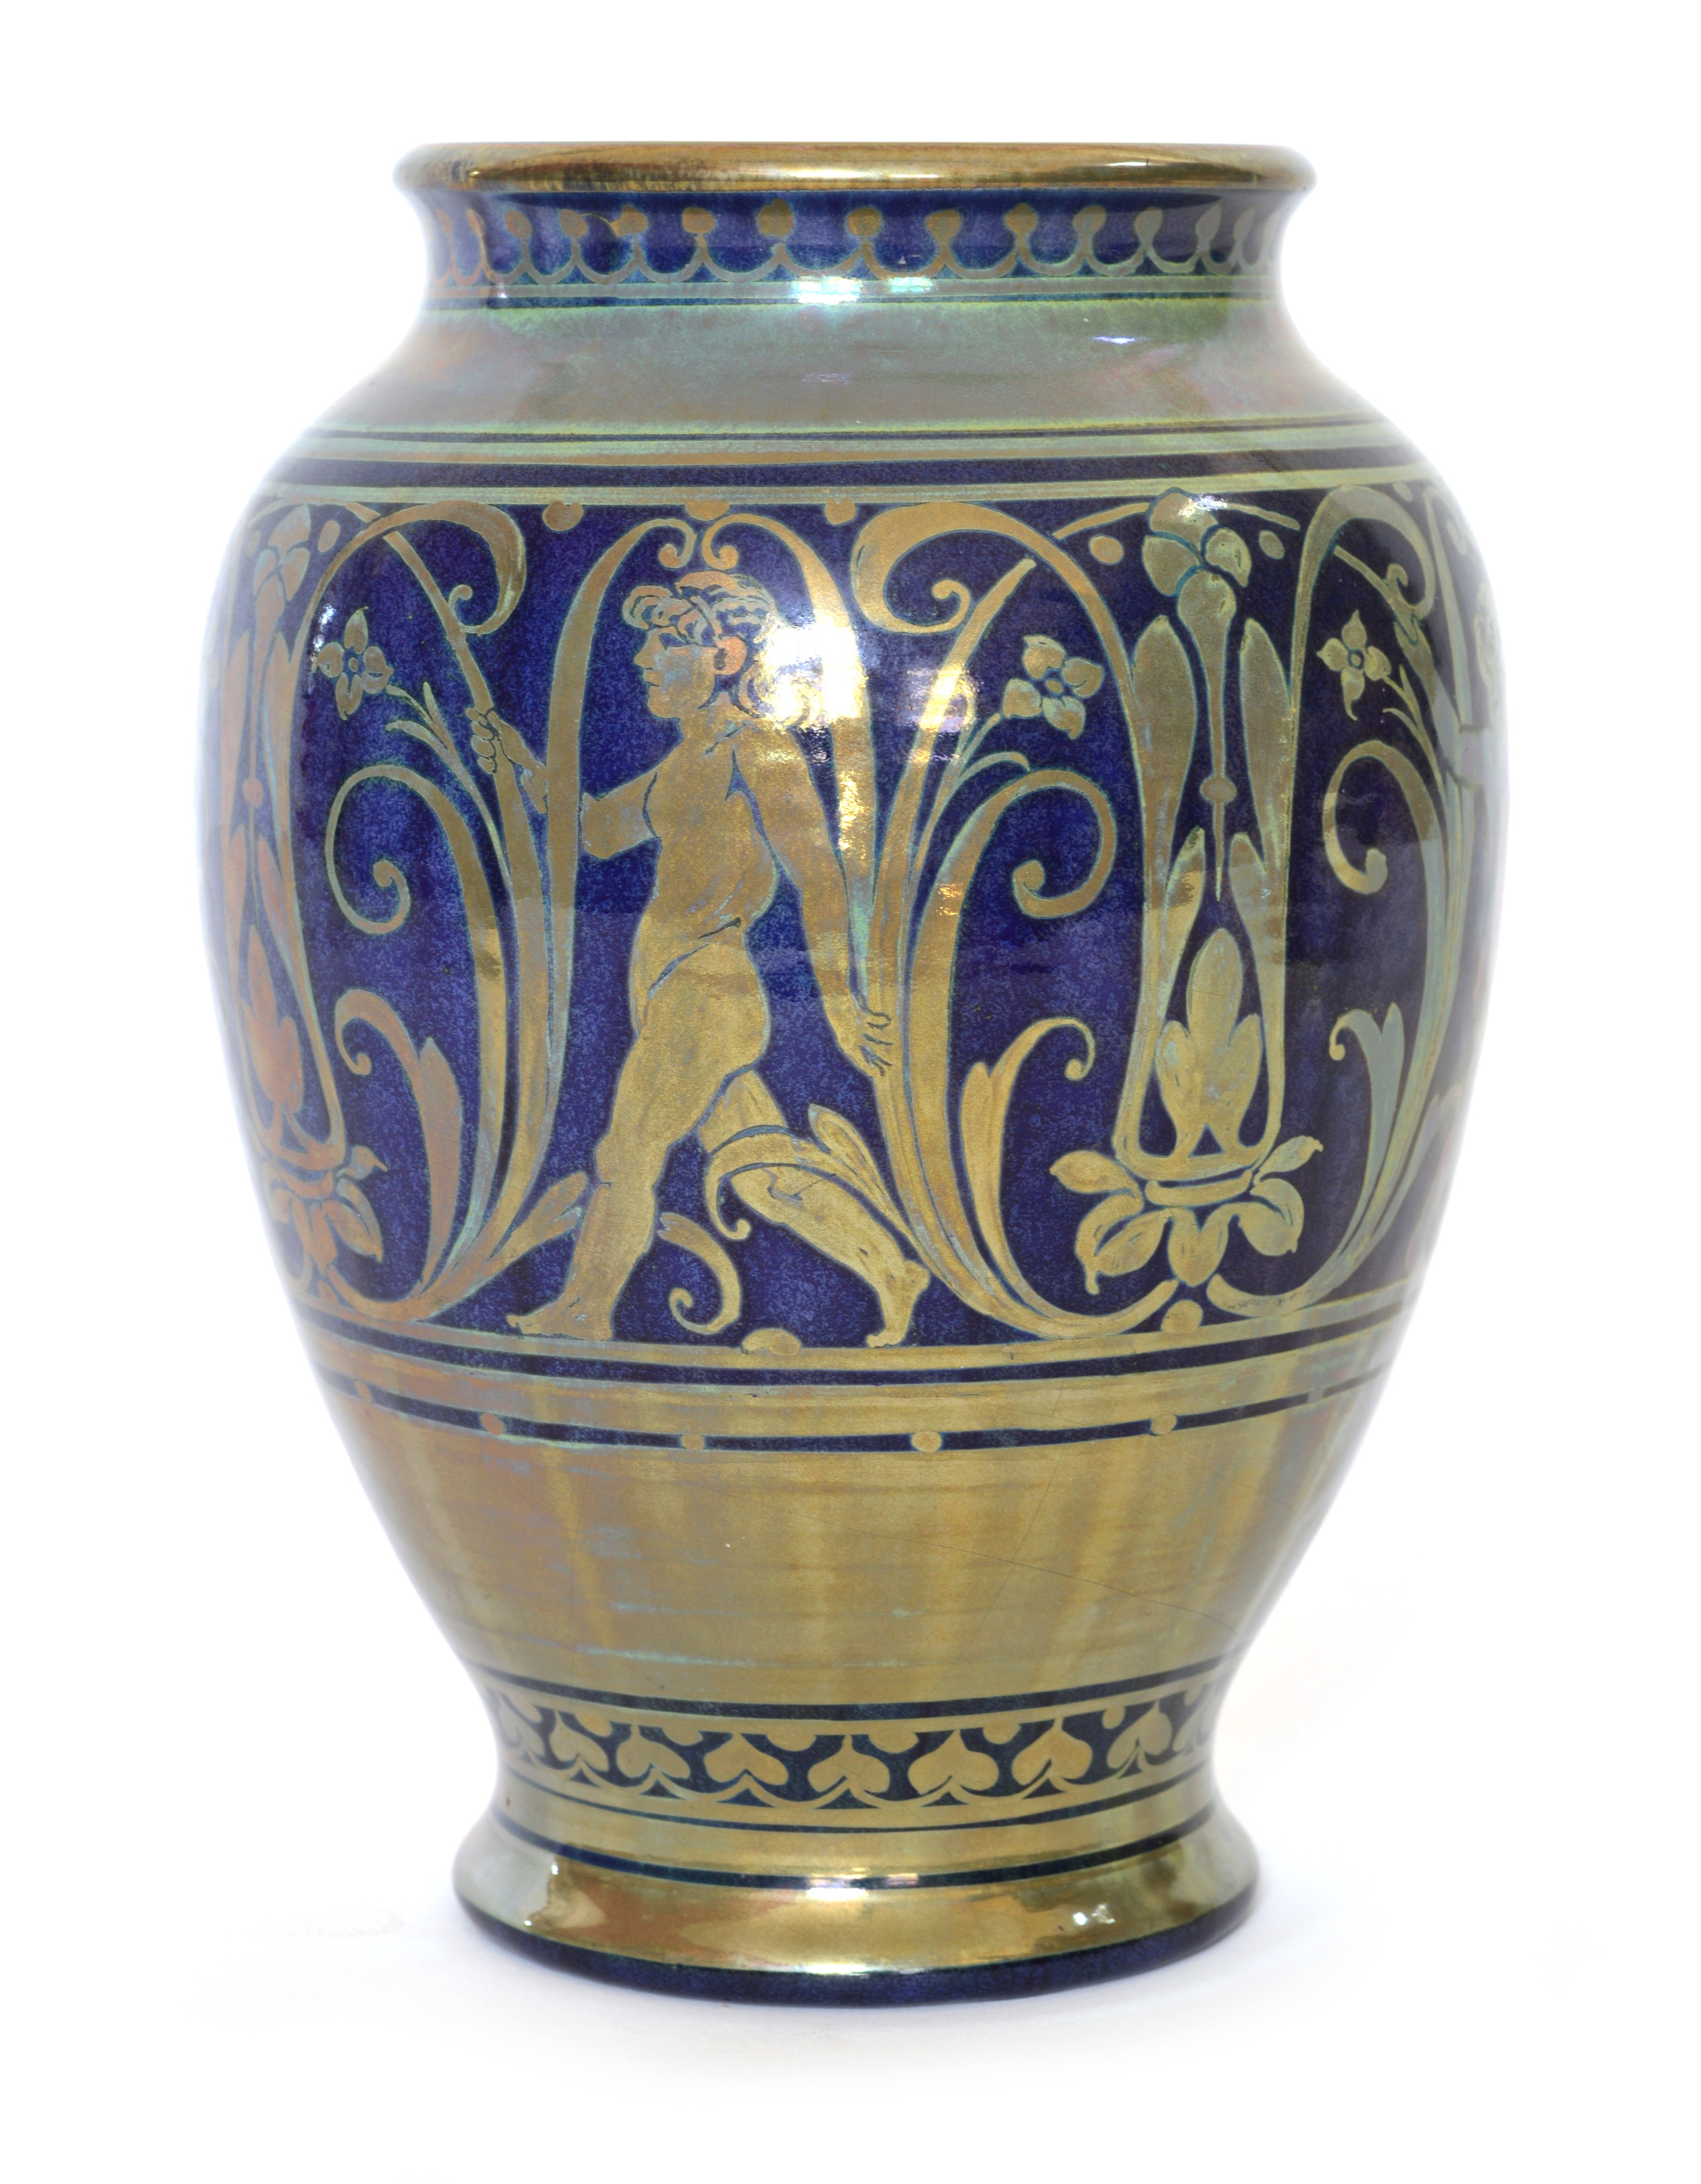 Pilkington's Royal Lancastrian Pottery at Auction